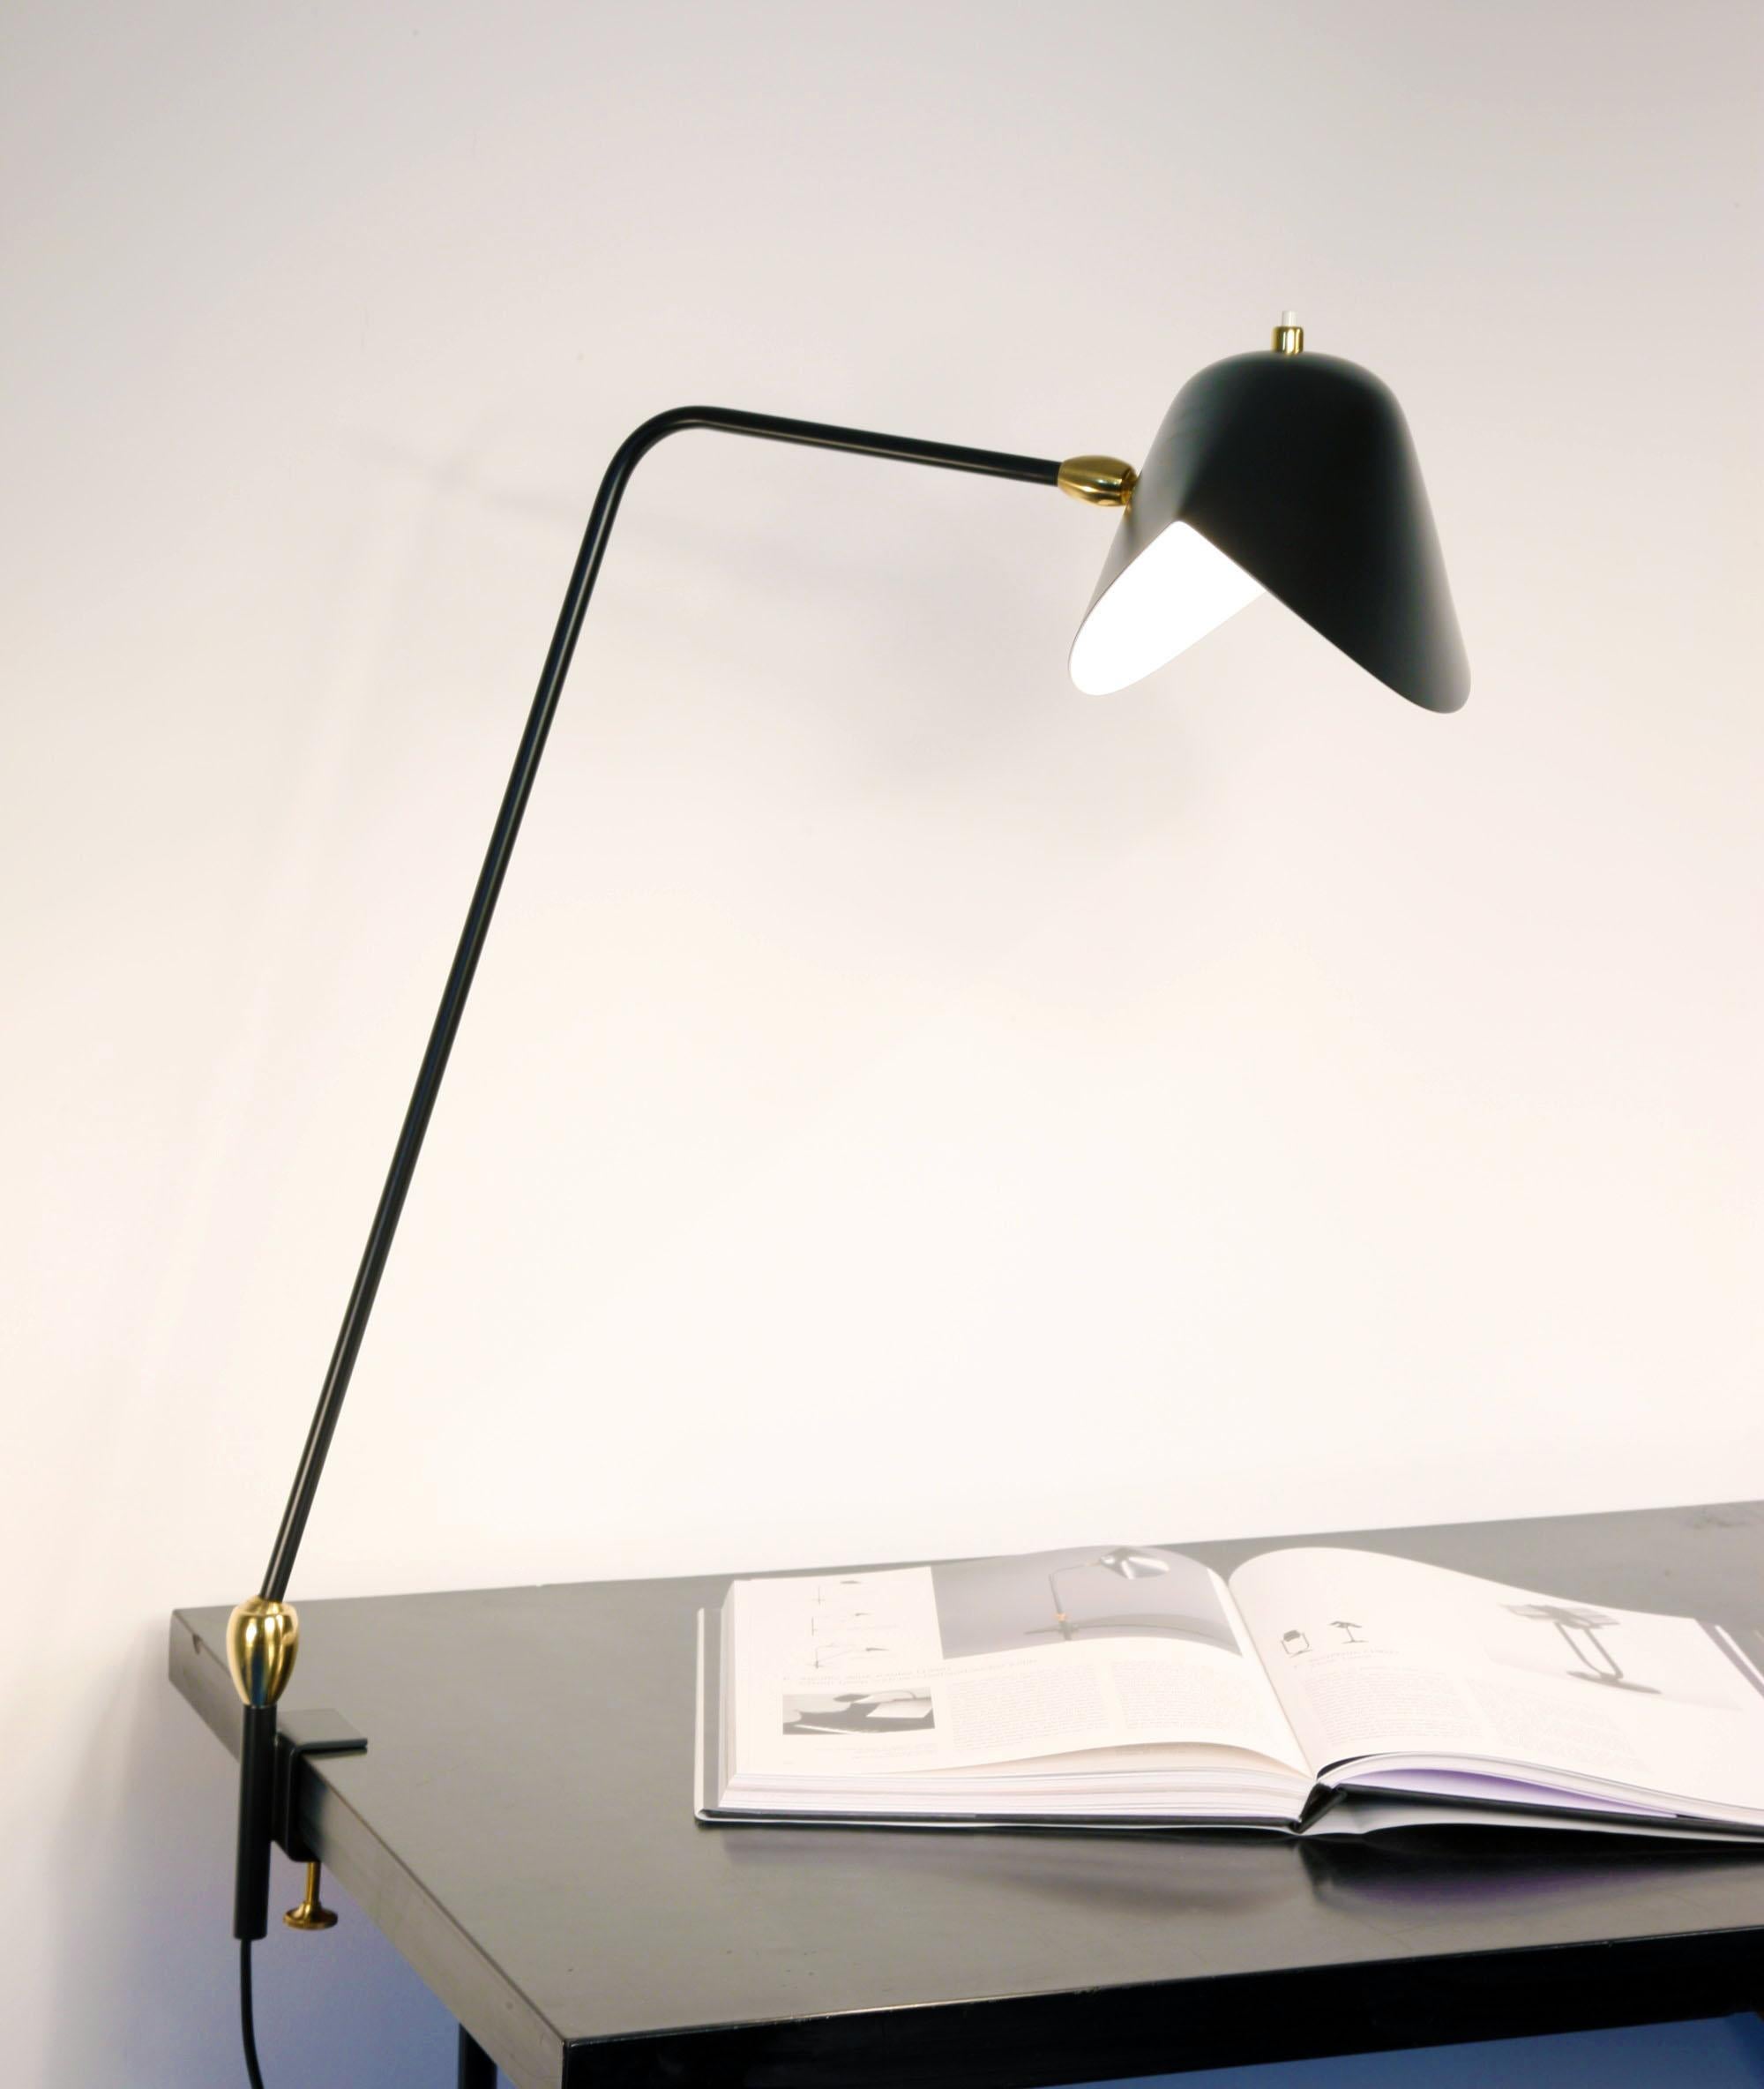 Avec une hauteur de 36 pouces, cette lampe ajustable peut se fixer sur de nombreuses surfaces et fournir un éclairage direct là où c'est nécessaire.

Disponible en blanc ou en noir. Des rotules en laiton relient les abat-jour.

Option de